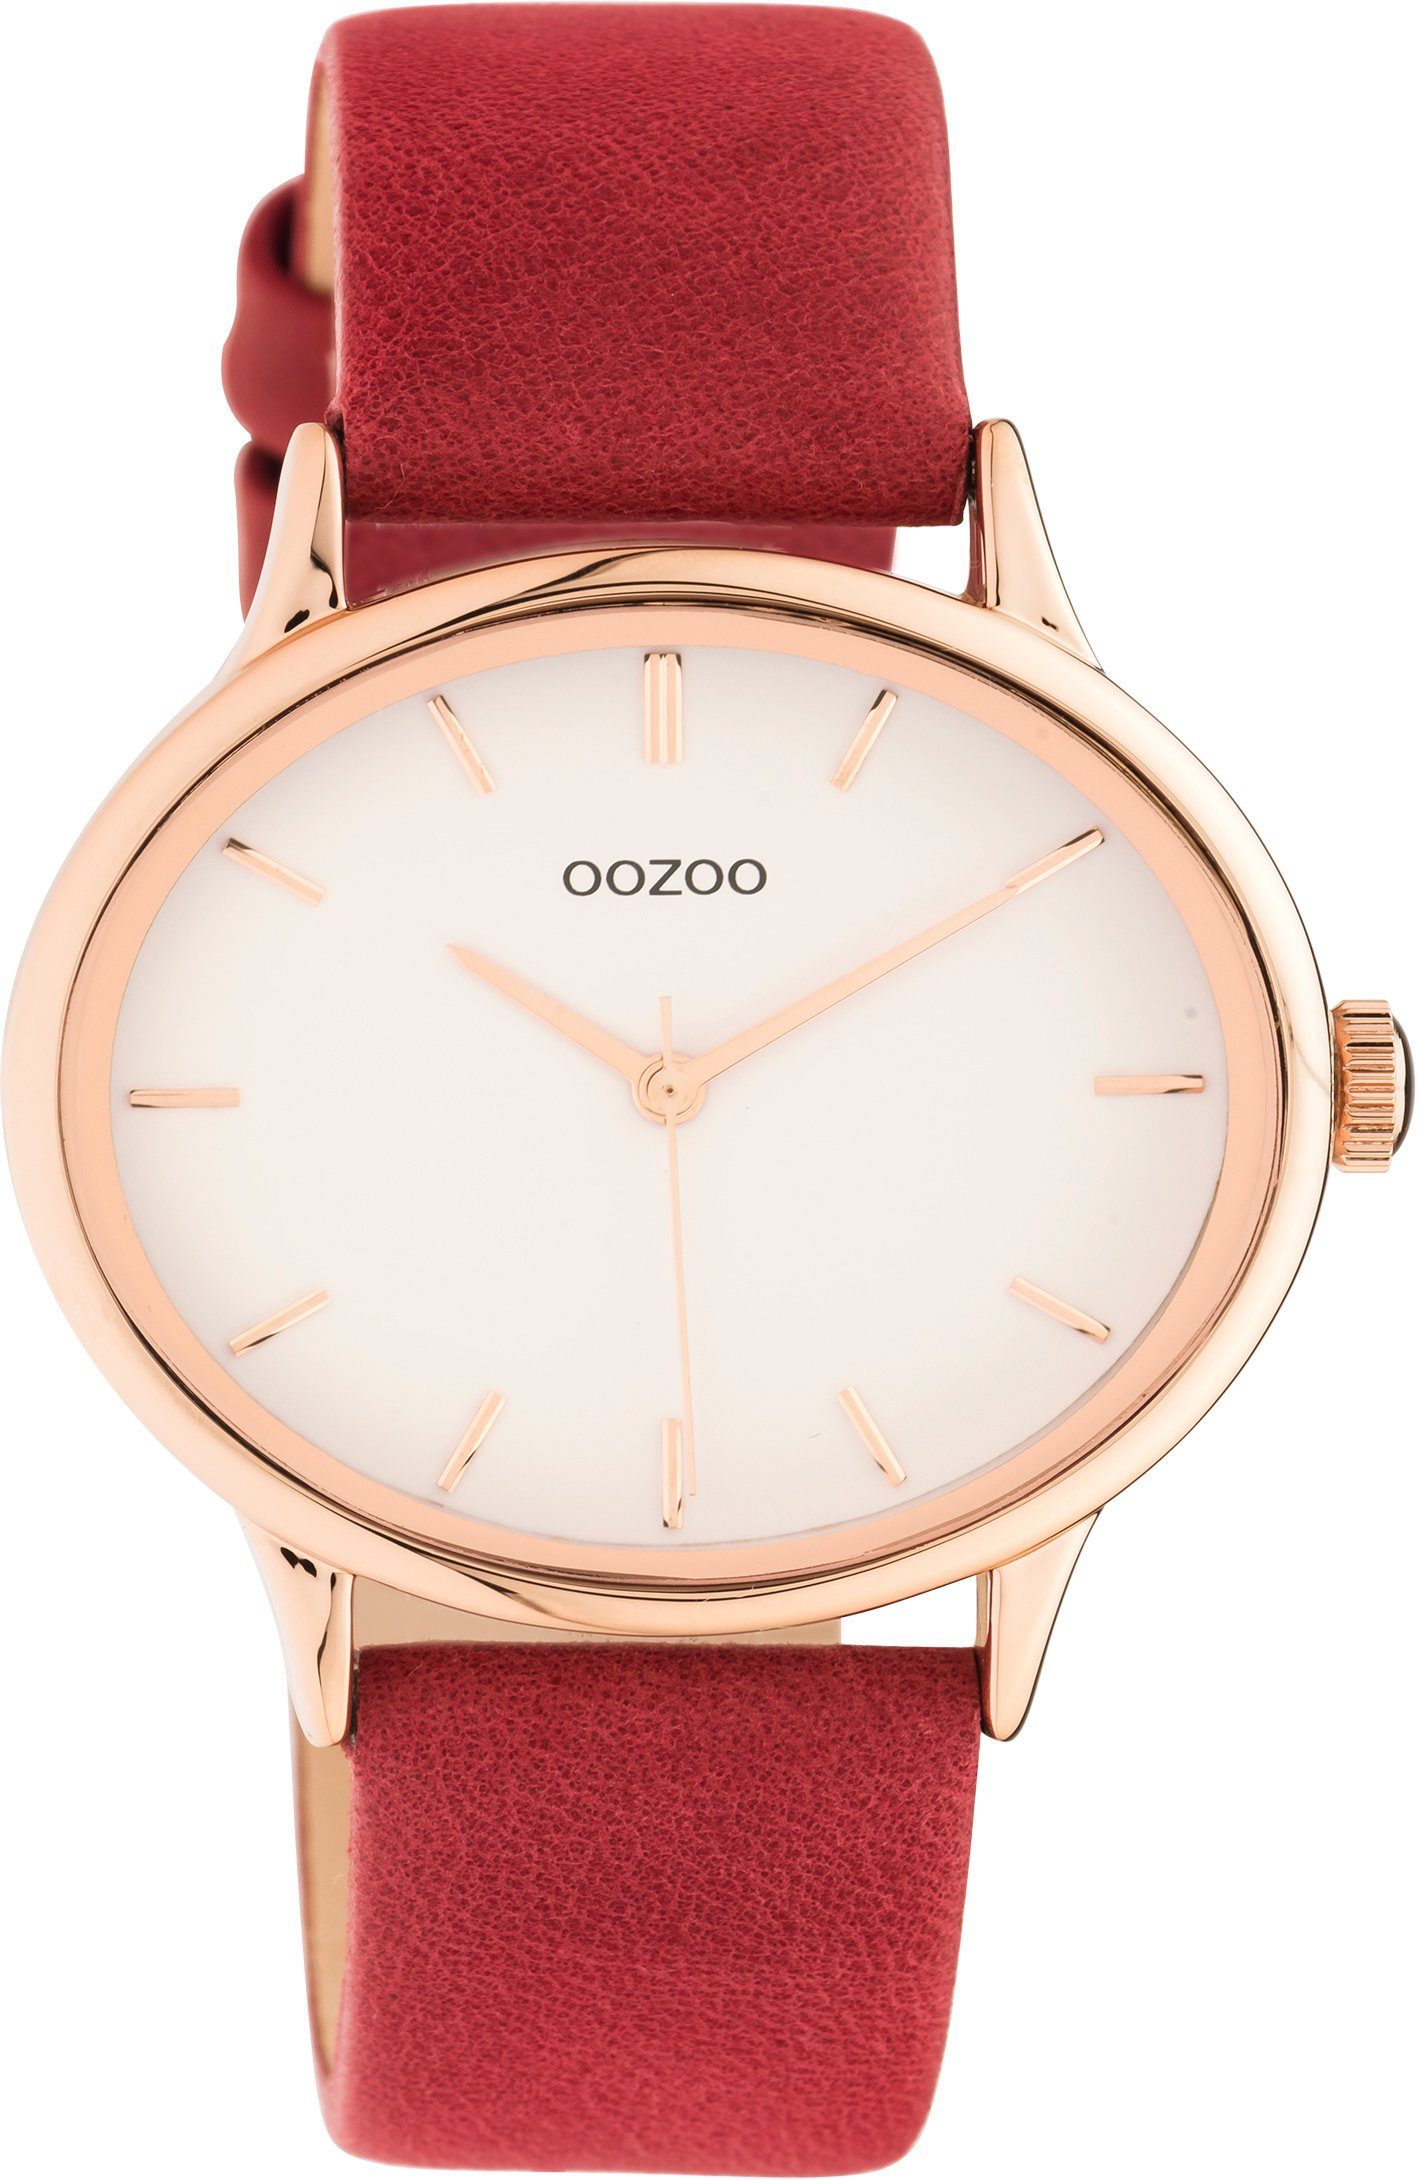 OOZOO Quarzuhr C11053, Armbanduhr, Damenuhr